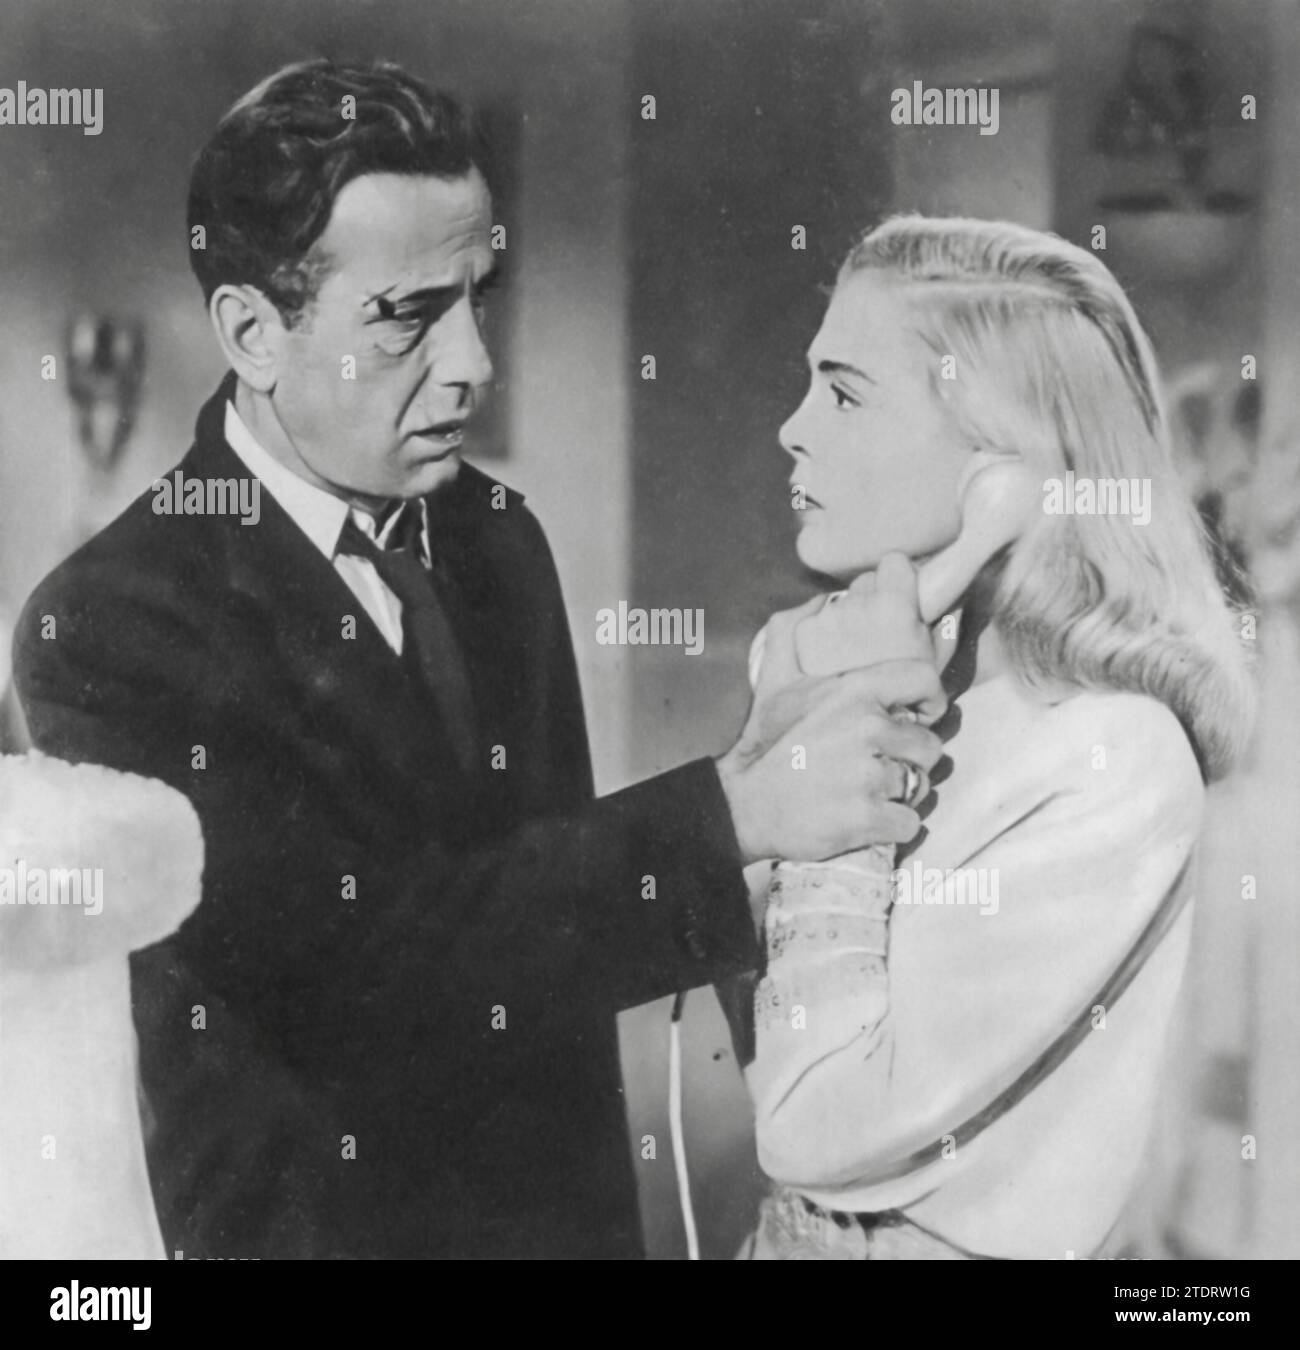 Humphrey Bogart e Lizabeth Scott sono i protagonisti del film noir "Dead Reckoning" (1947). In questo avvincente thriller, Bogart interpreta un veterano di guerra che indaga nella malavita criminale per scoprire la verità dietro la misteriosa morte del suo amico. Scott interpreta una femme fatale, aggiungendo intrighi e complessità alla trama. Il film è noto per la sua atmosfera oscura, i dialoghi nitidi e la forte chimica tra Bogart e Scott, rendendo "Dead Reckoning" un classico esempio di genere noir. Foto Stock